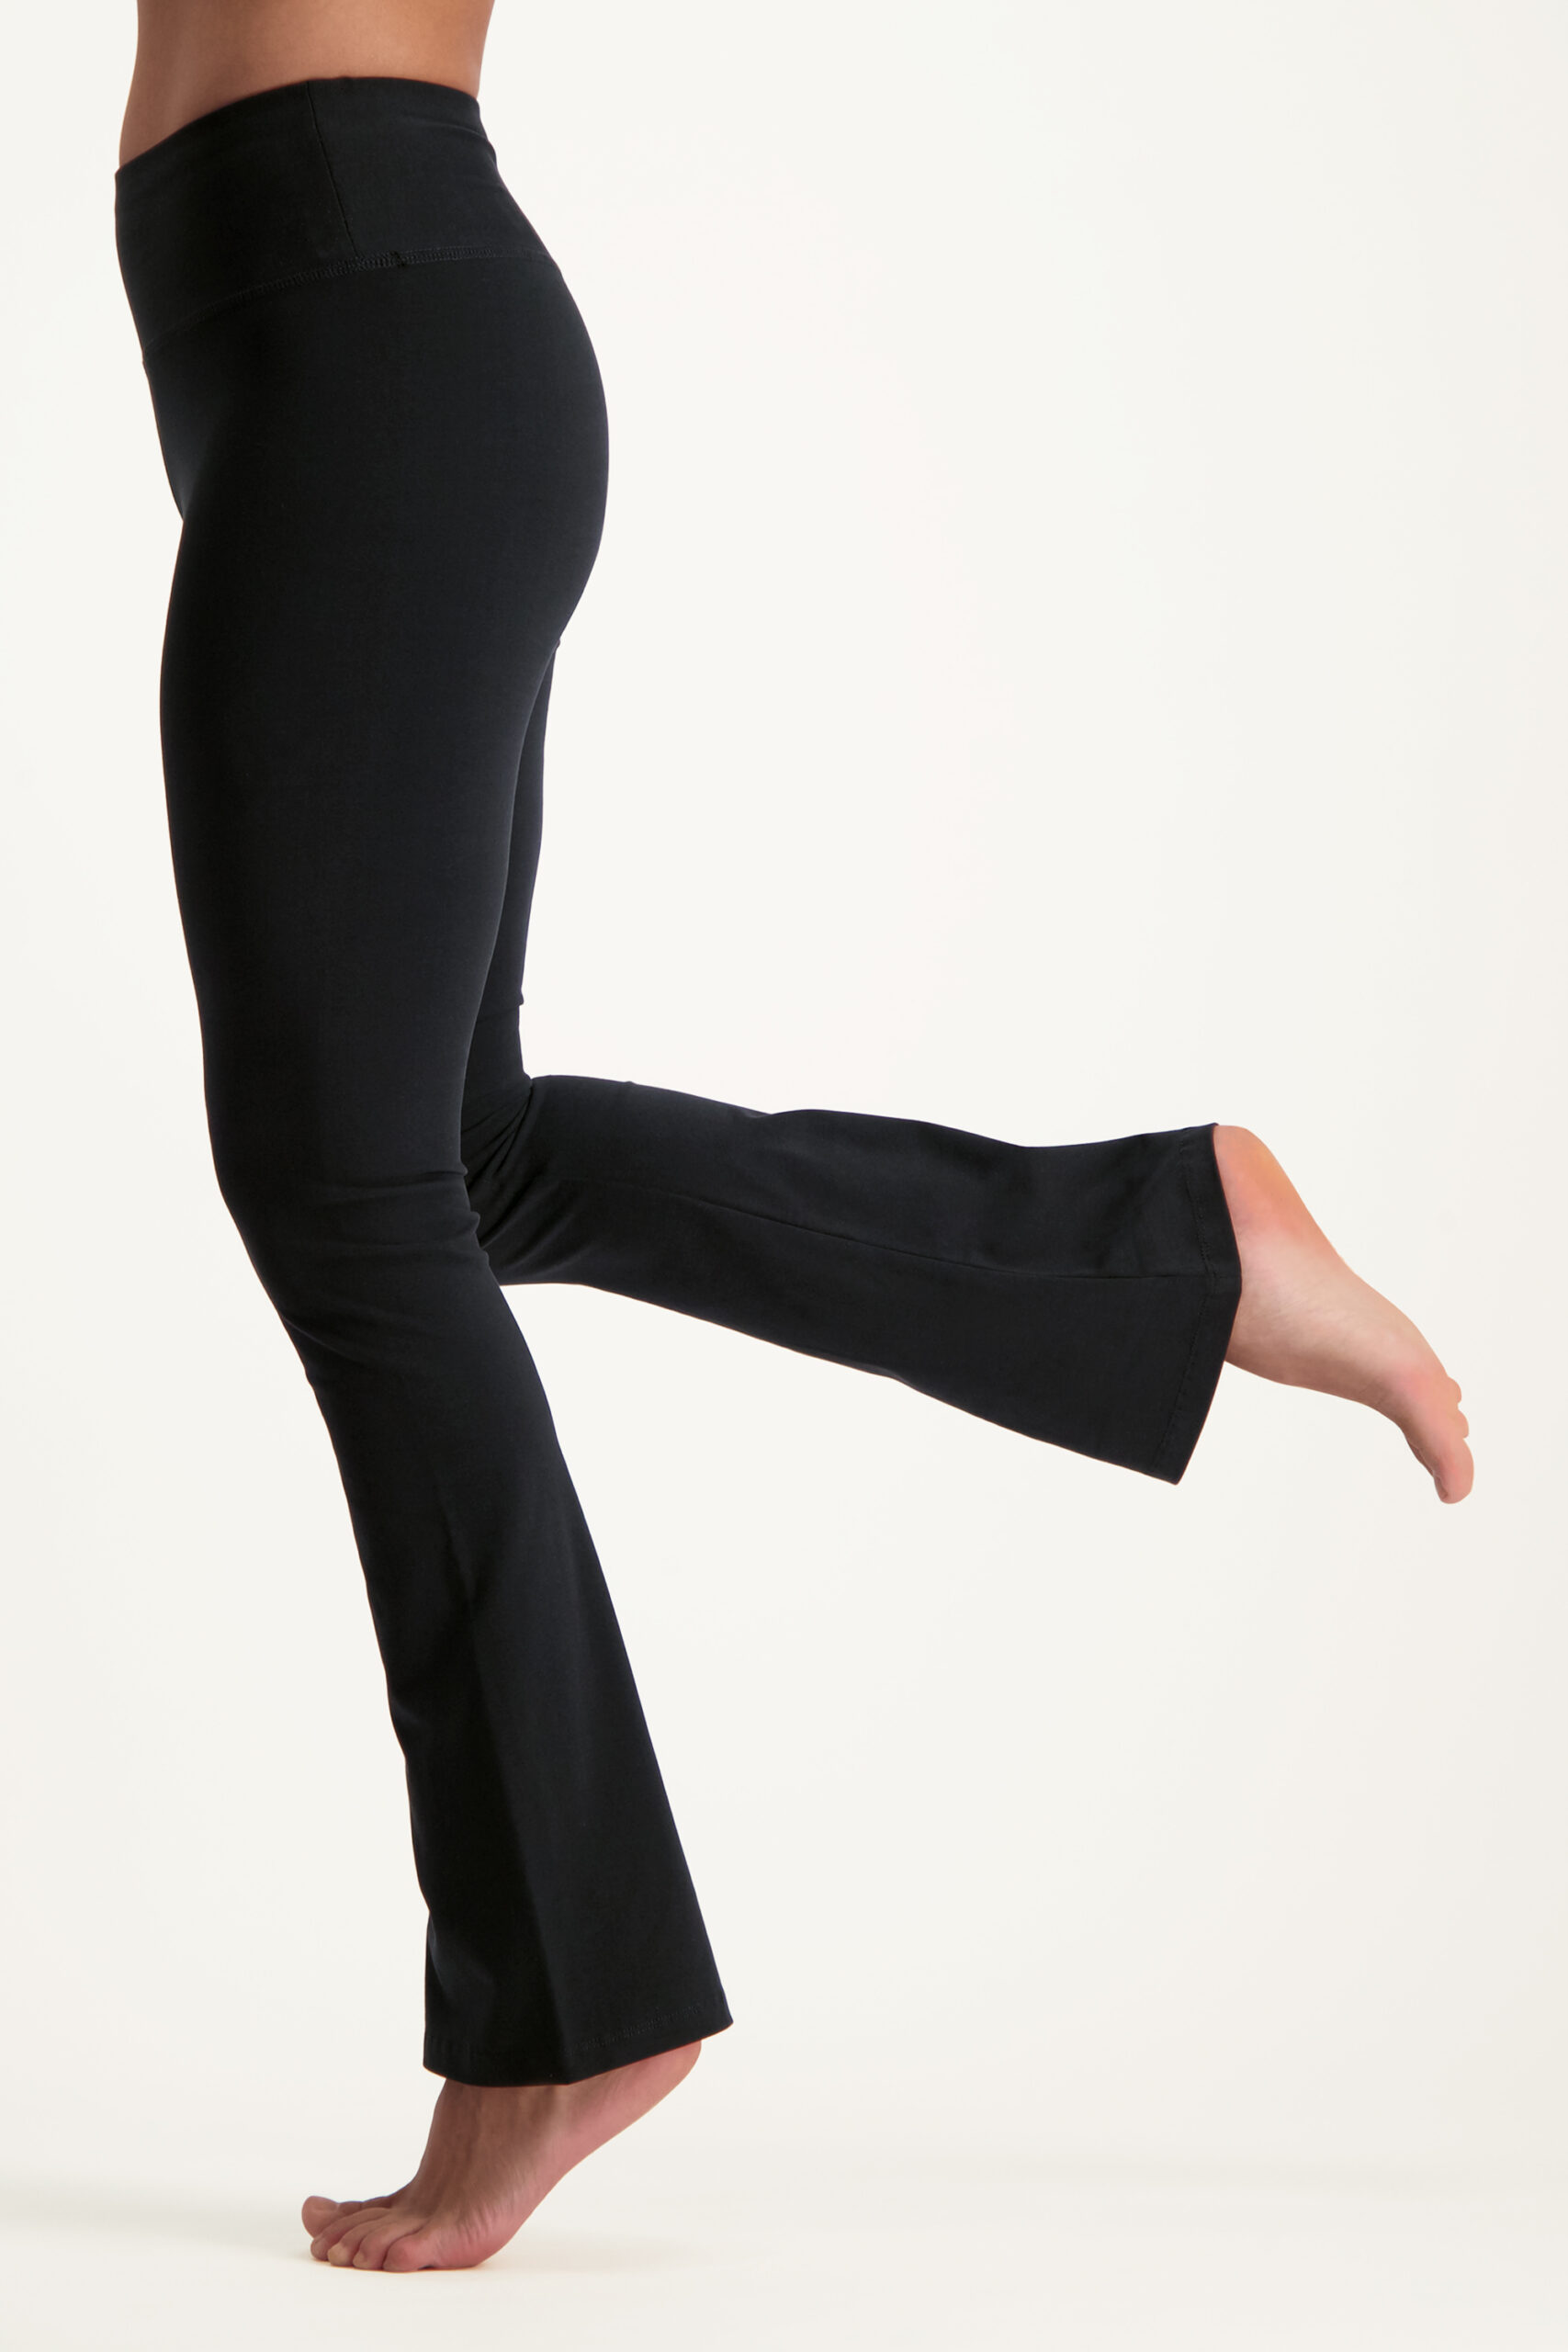 Acrobatiek garen deze Yoga broeken | Slim fit & bootcut foldover | Urban Goddess